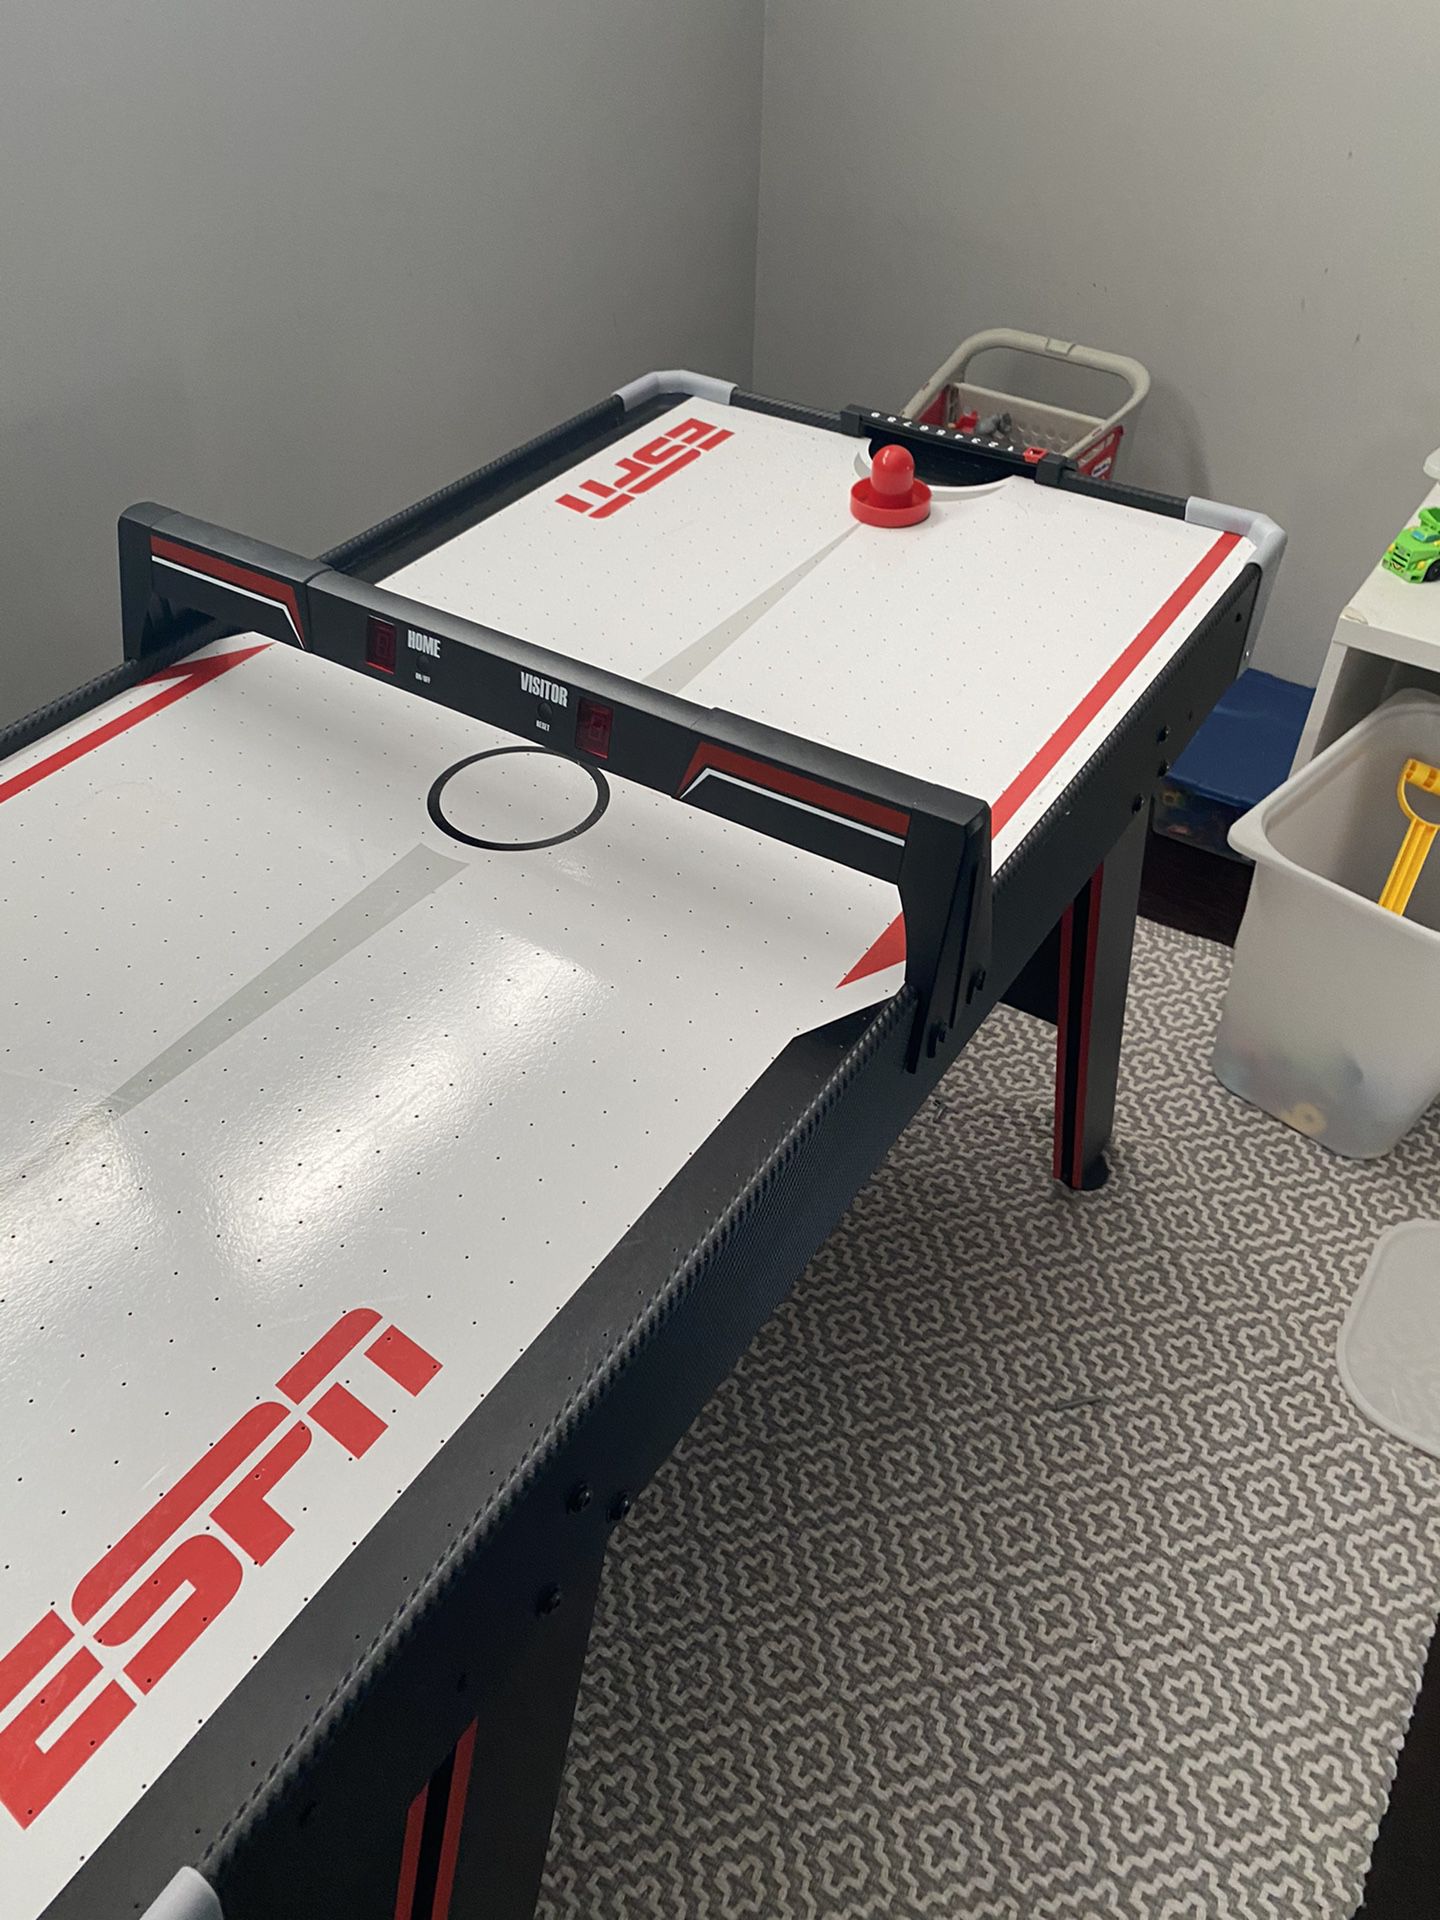 ESPN Air hockey table like new